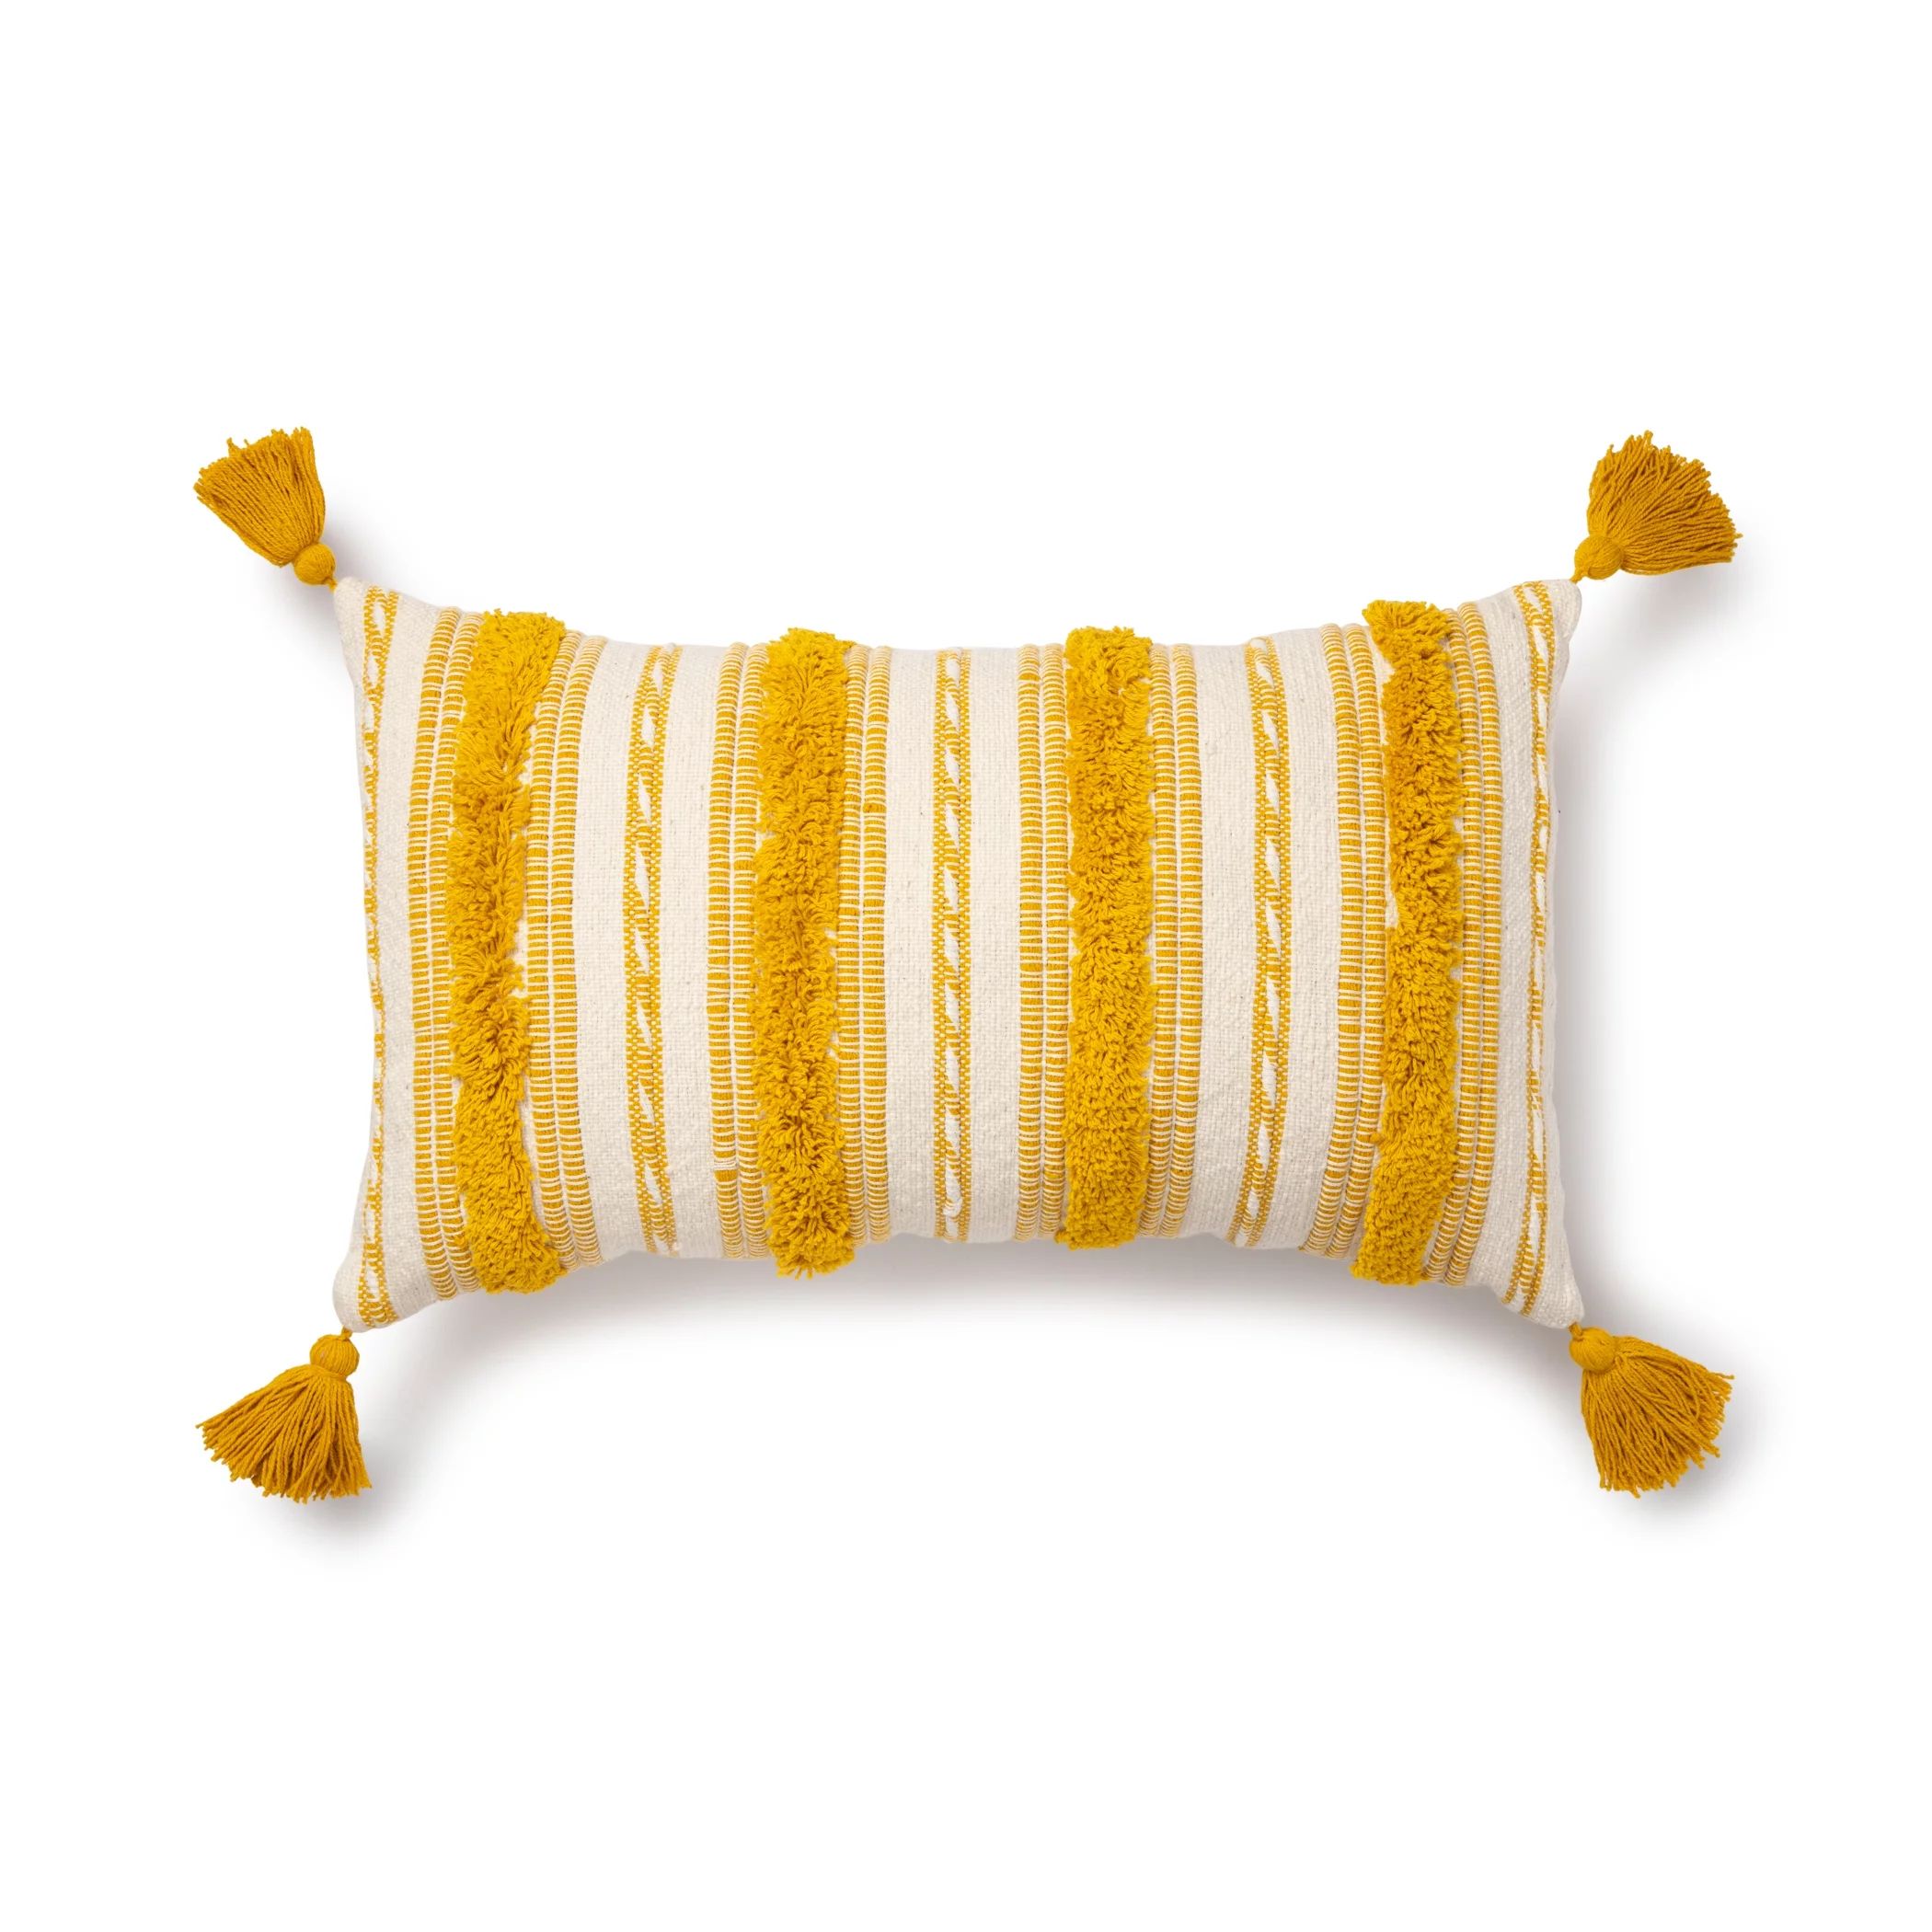 Better Homes & Gardens Woven Tufted Decorative Lumbar Pillow, 14" x 24", Yellow | Walmart (US)